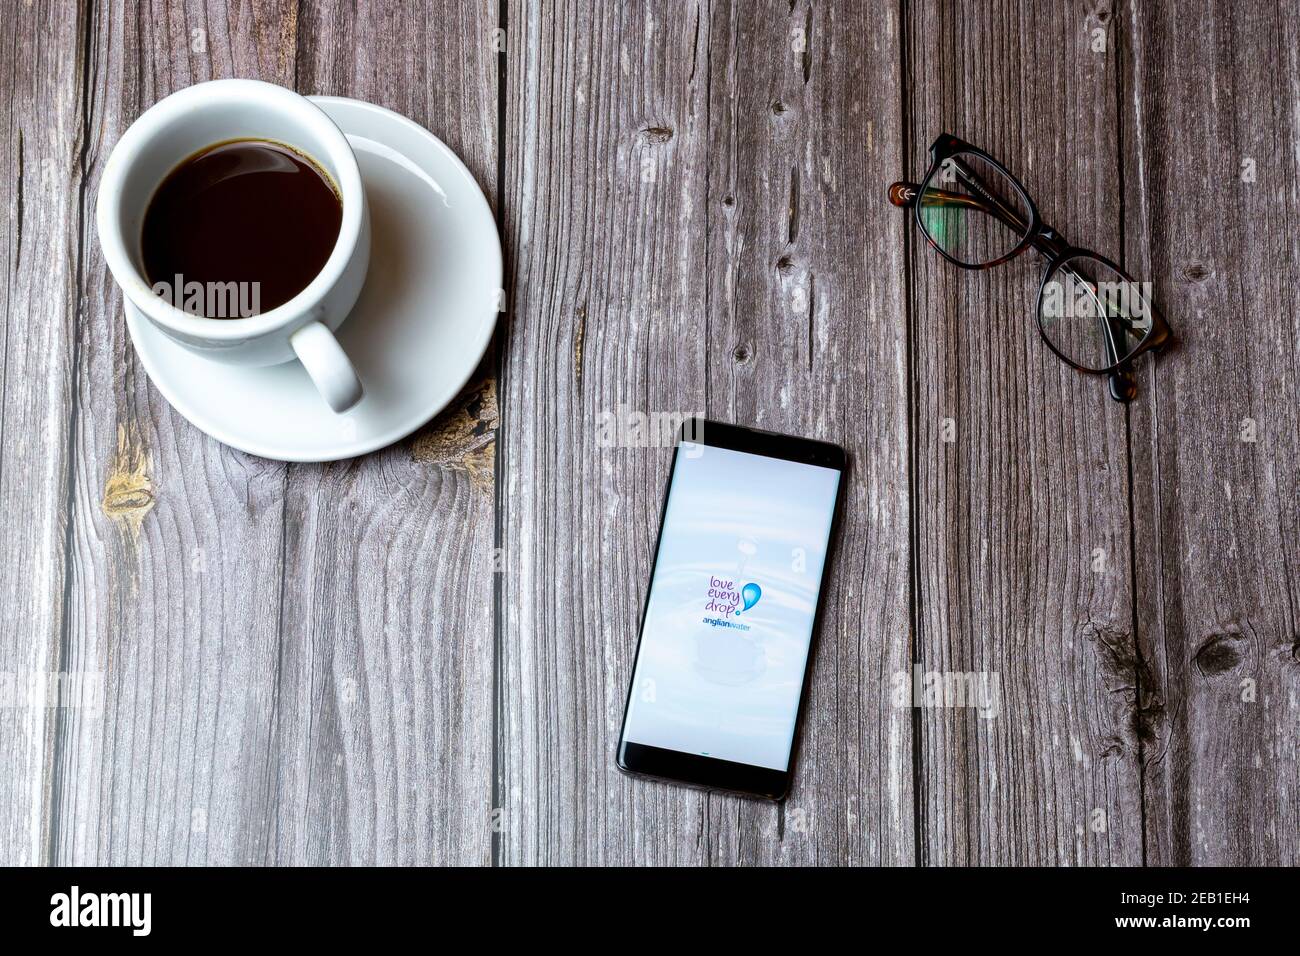 Ein Handy oder Handy auf einem Holz gelegt Tabelle mit der Anglian Wasser-App auf dem Bildschirm als nächstes geöffnet Zu einem Kaffee Stockfoto